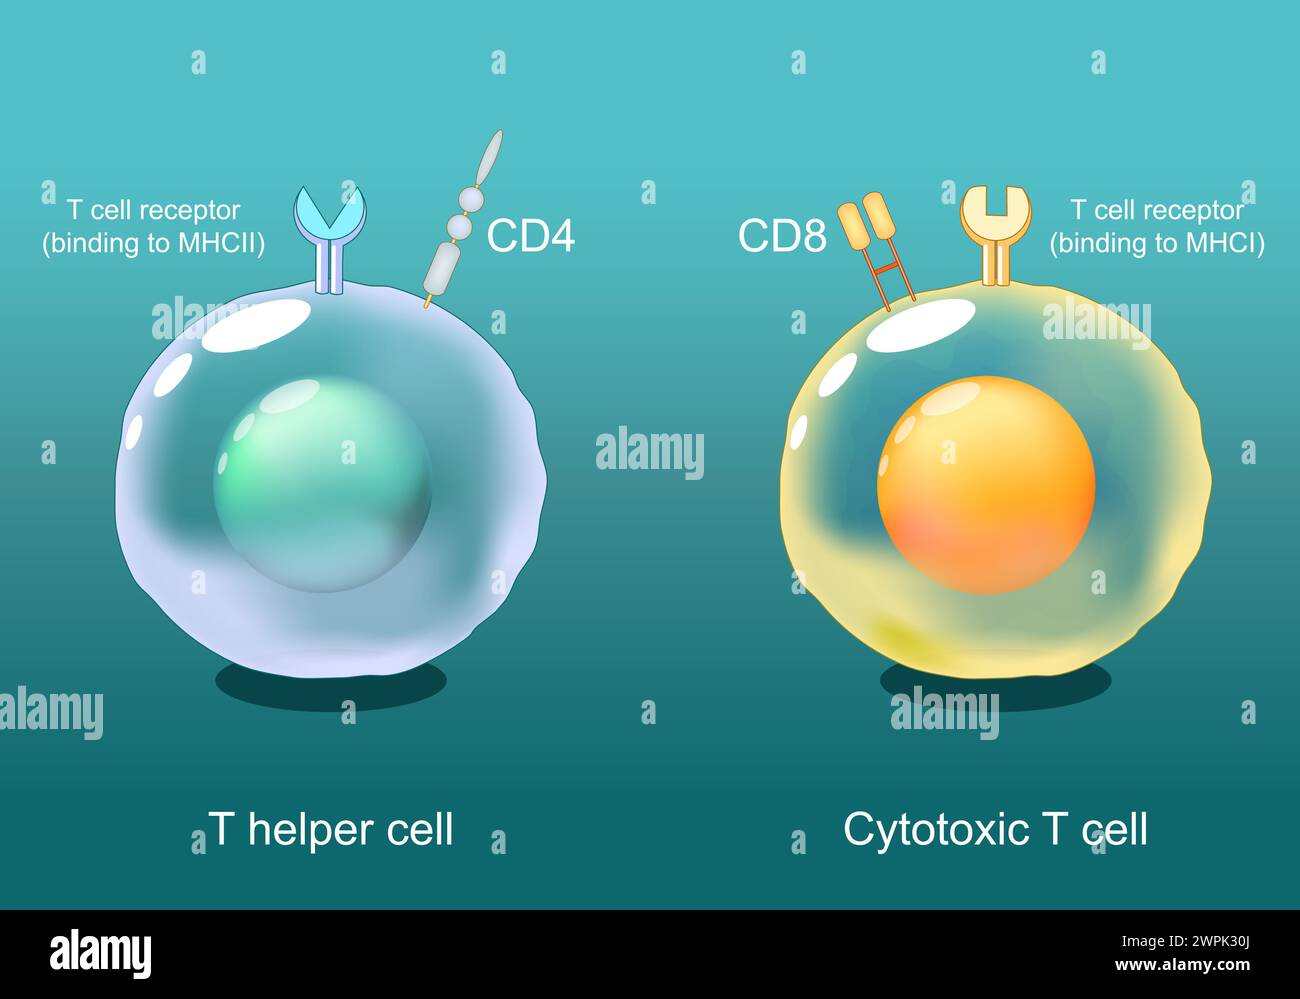 Helfer-T-Zellen und zytotoxische T-Zellen. CD8- und CD4-Lymphozyten. Antigen-Präsentation. TCR-Rezeptor auf weißen Blutkörperchen. Adaptive Immunantwort. Vect Stock Vektor